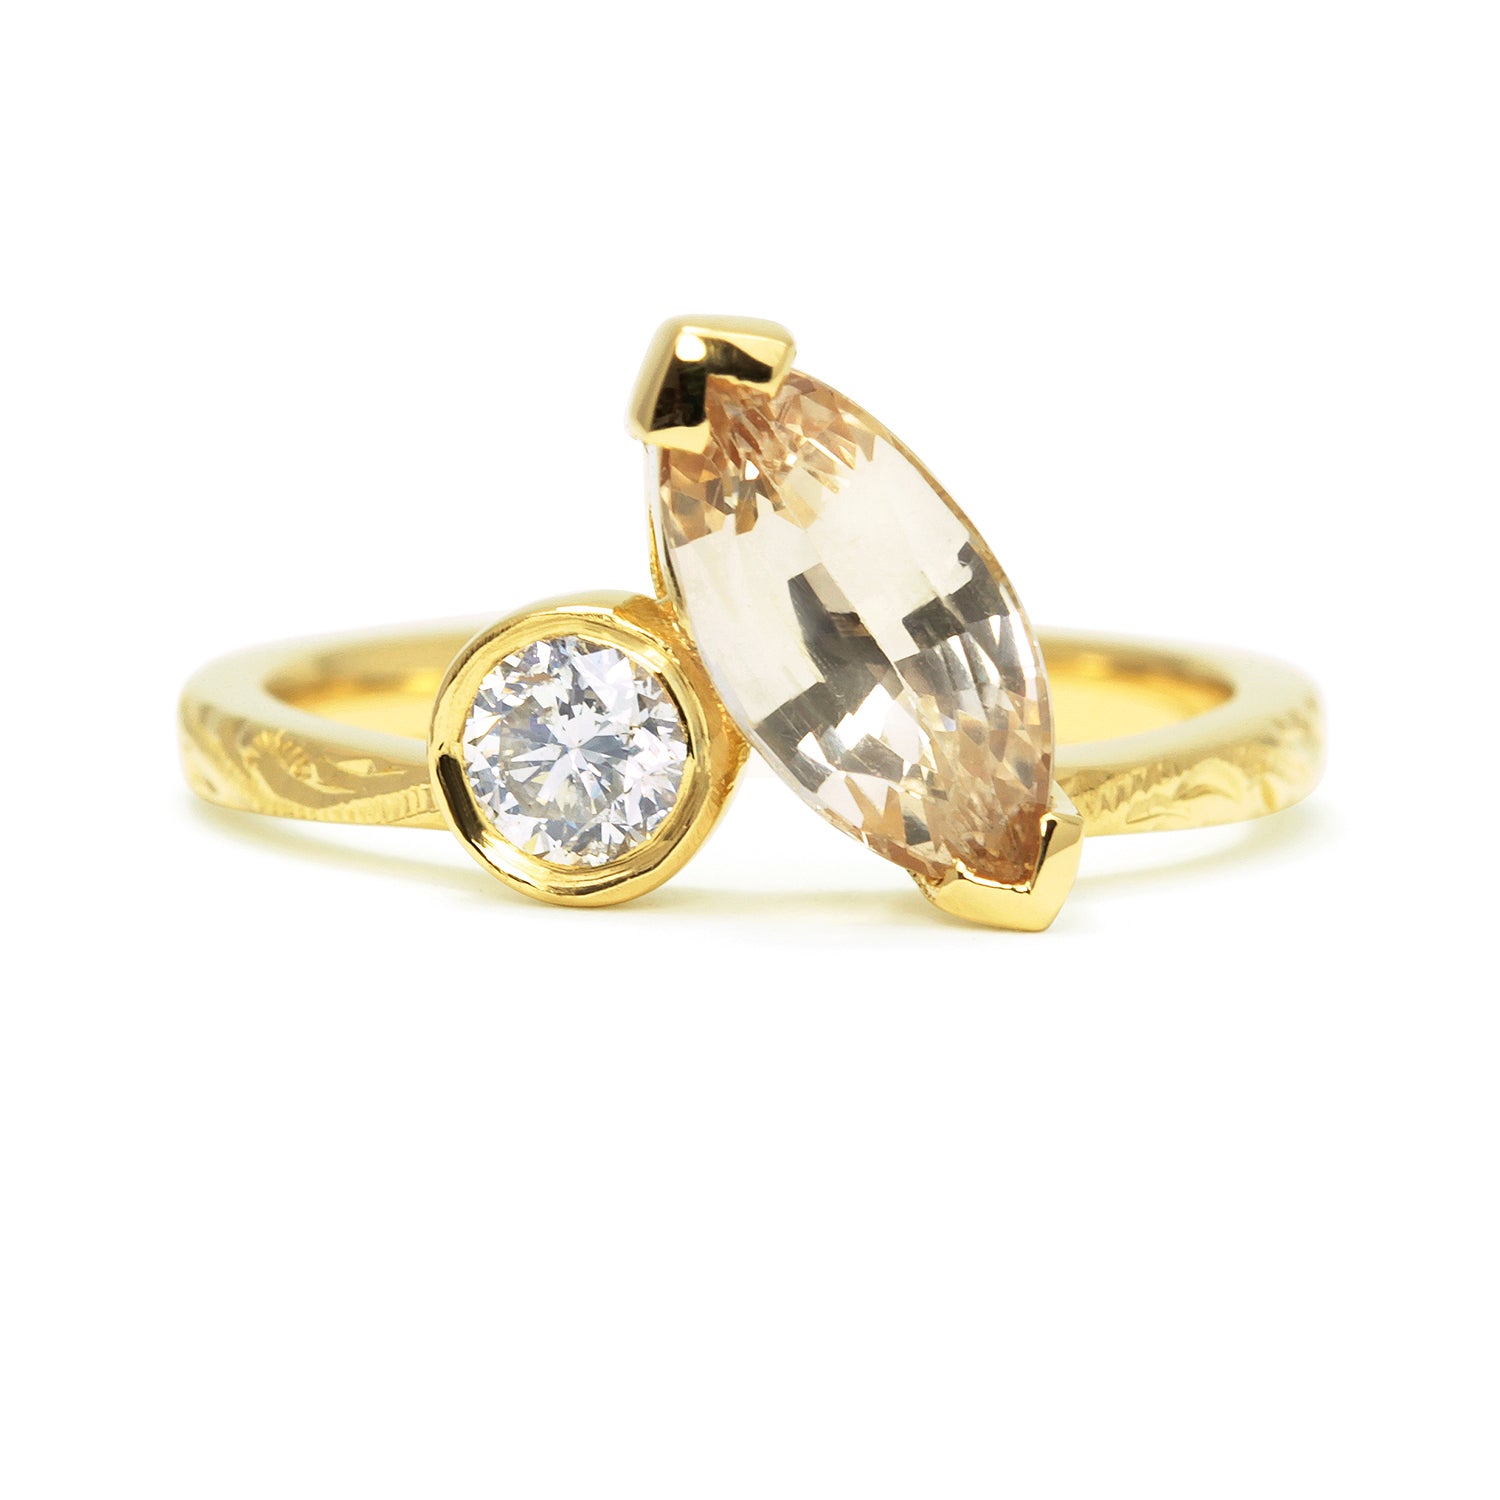 Bespoke Matt Ethical Sapphire and Diamond Toi et Moi Engagement Ring